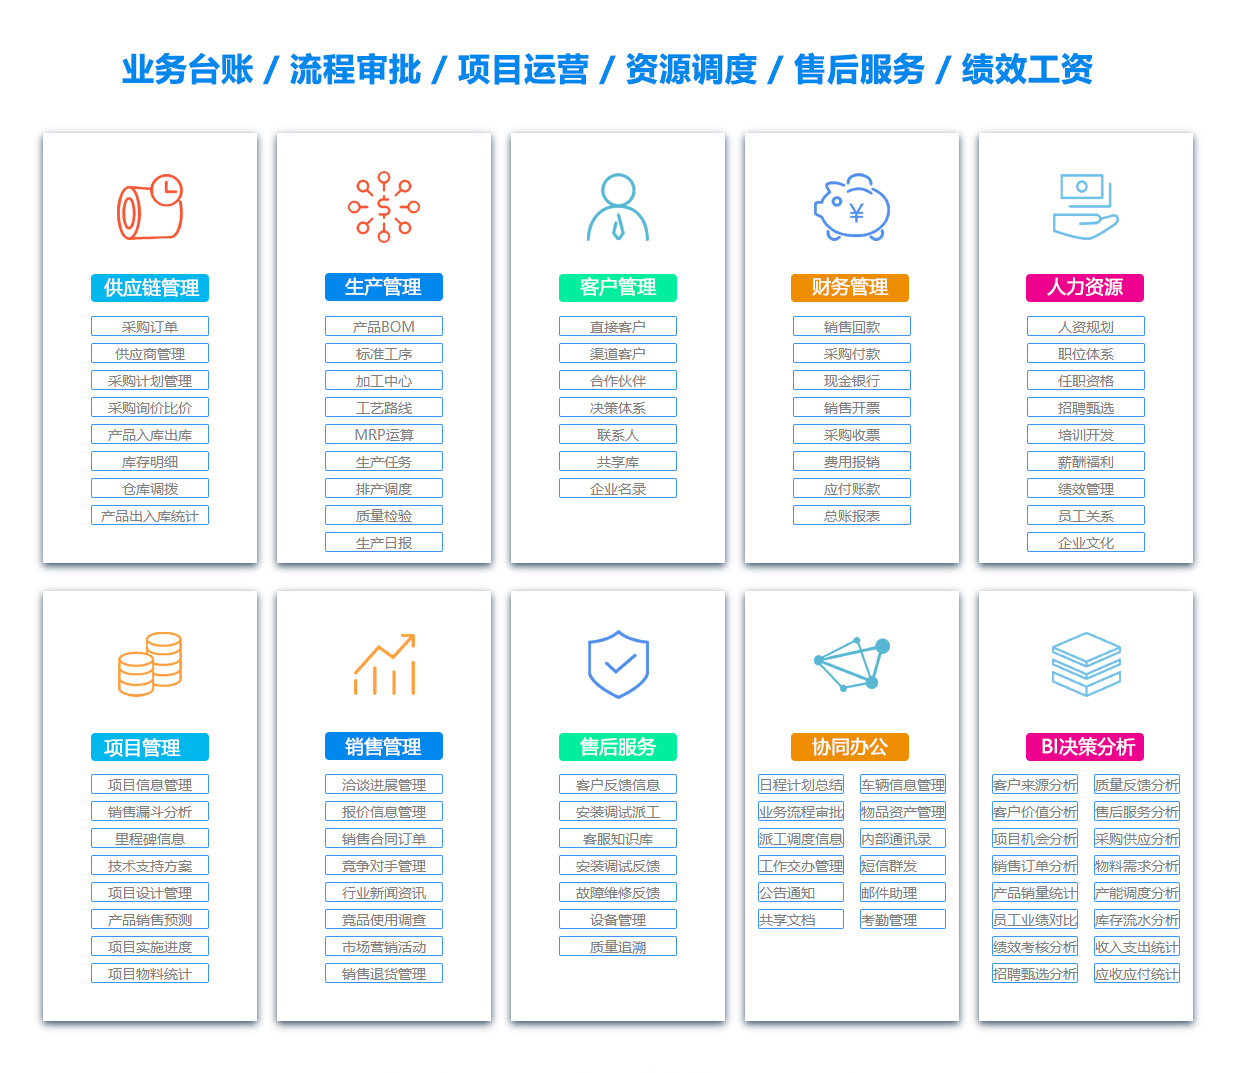 萍乡PDM:产品数据管理系统